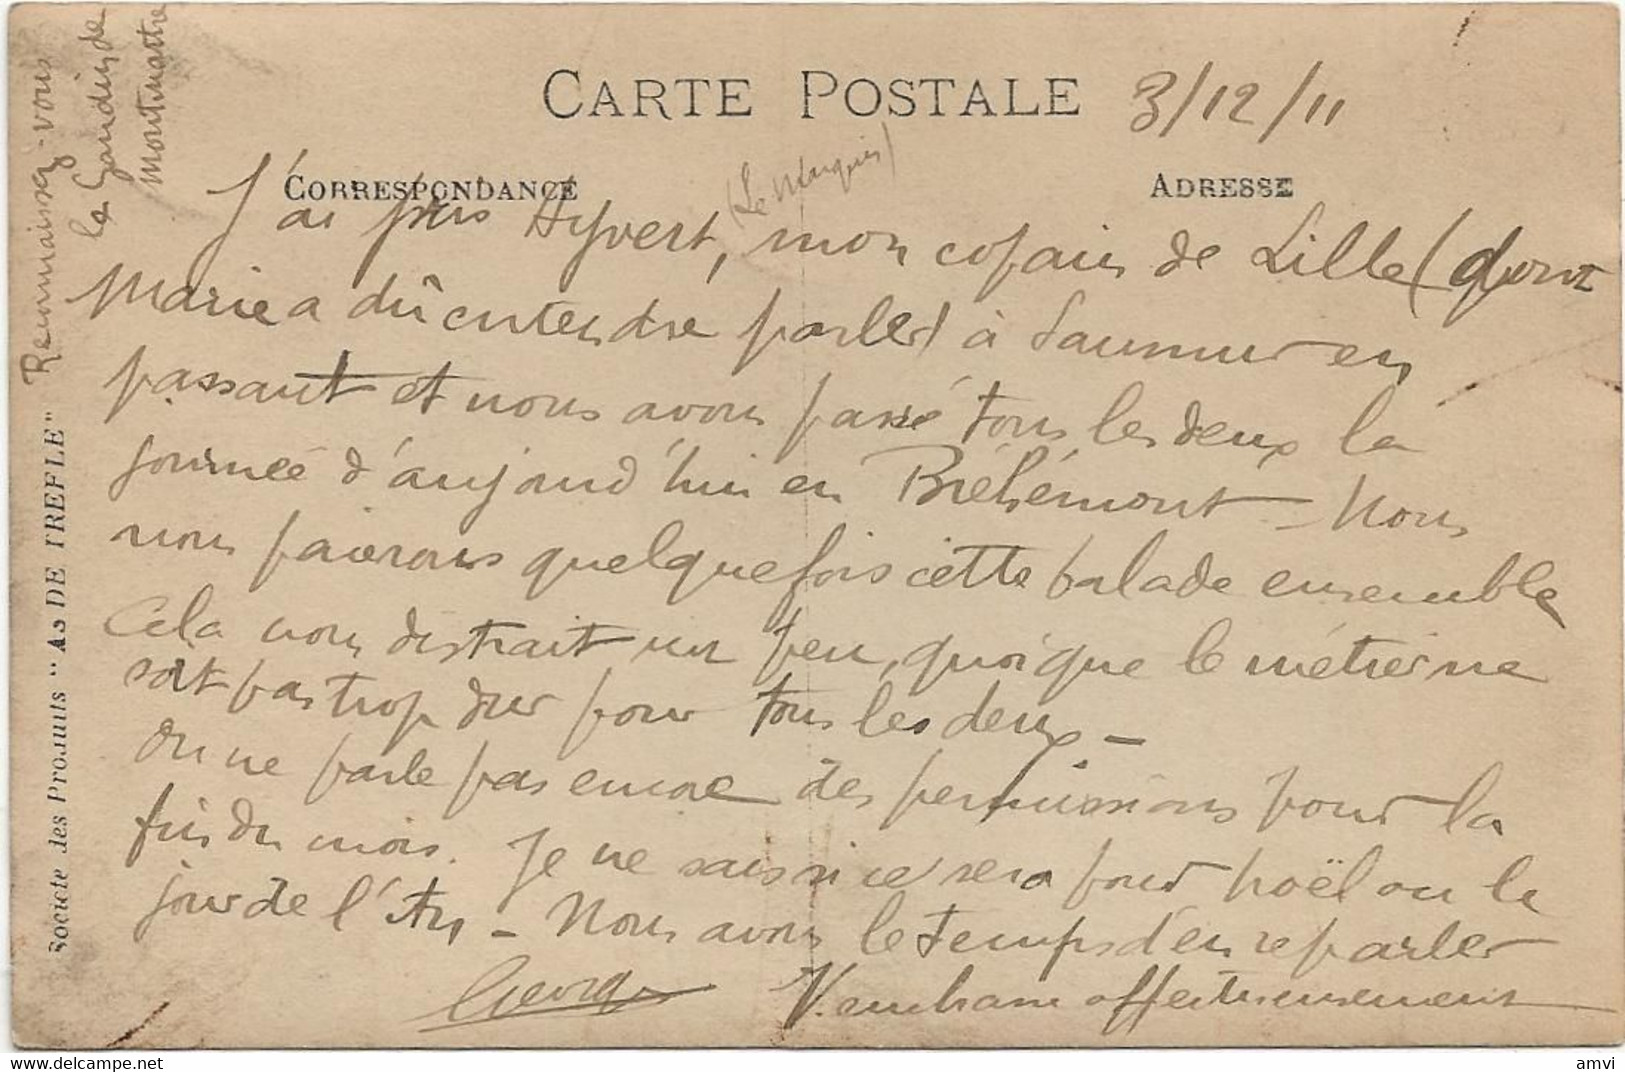 22-8-2589 Carte Photo élèves Caporaux 6eme Genie 1911 Angers - Régiments